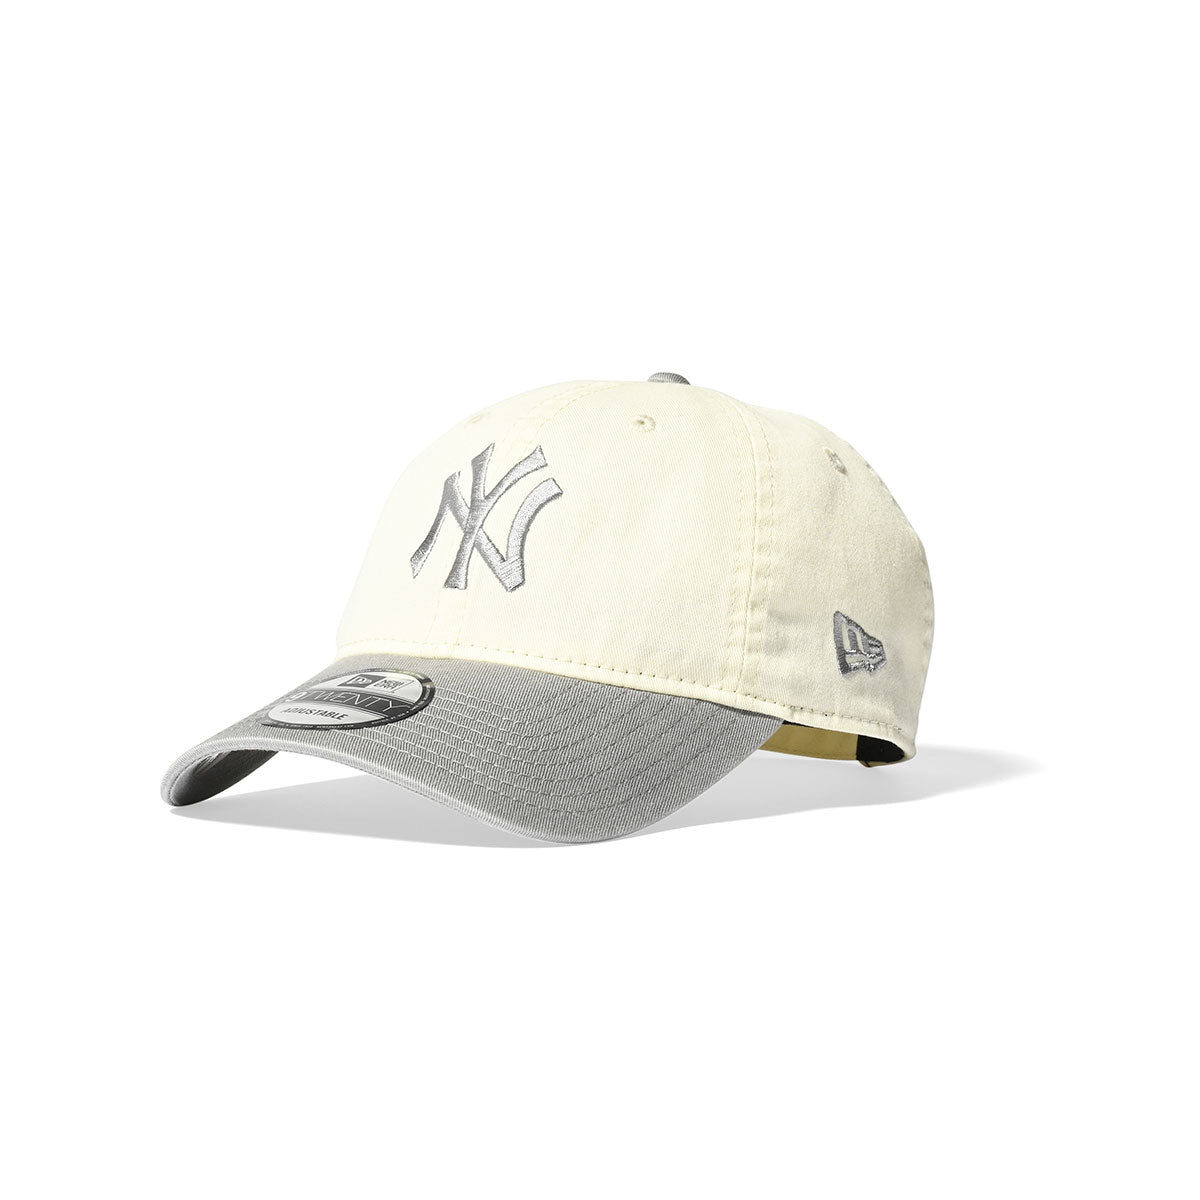 NEW ERA New York Yankees - 9TWENTY CROME WHITE GRAY【14353292 